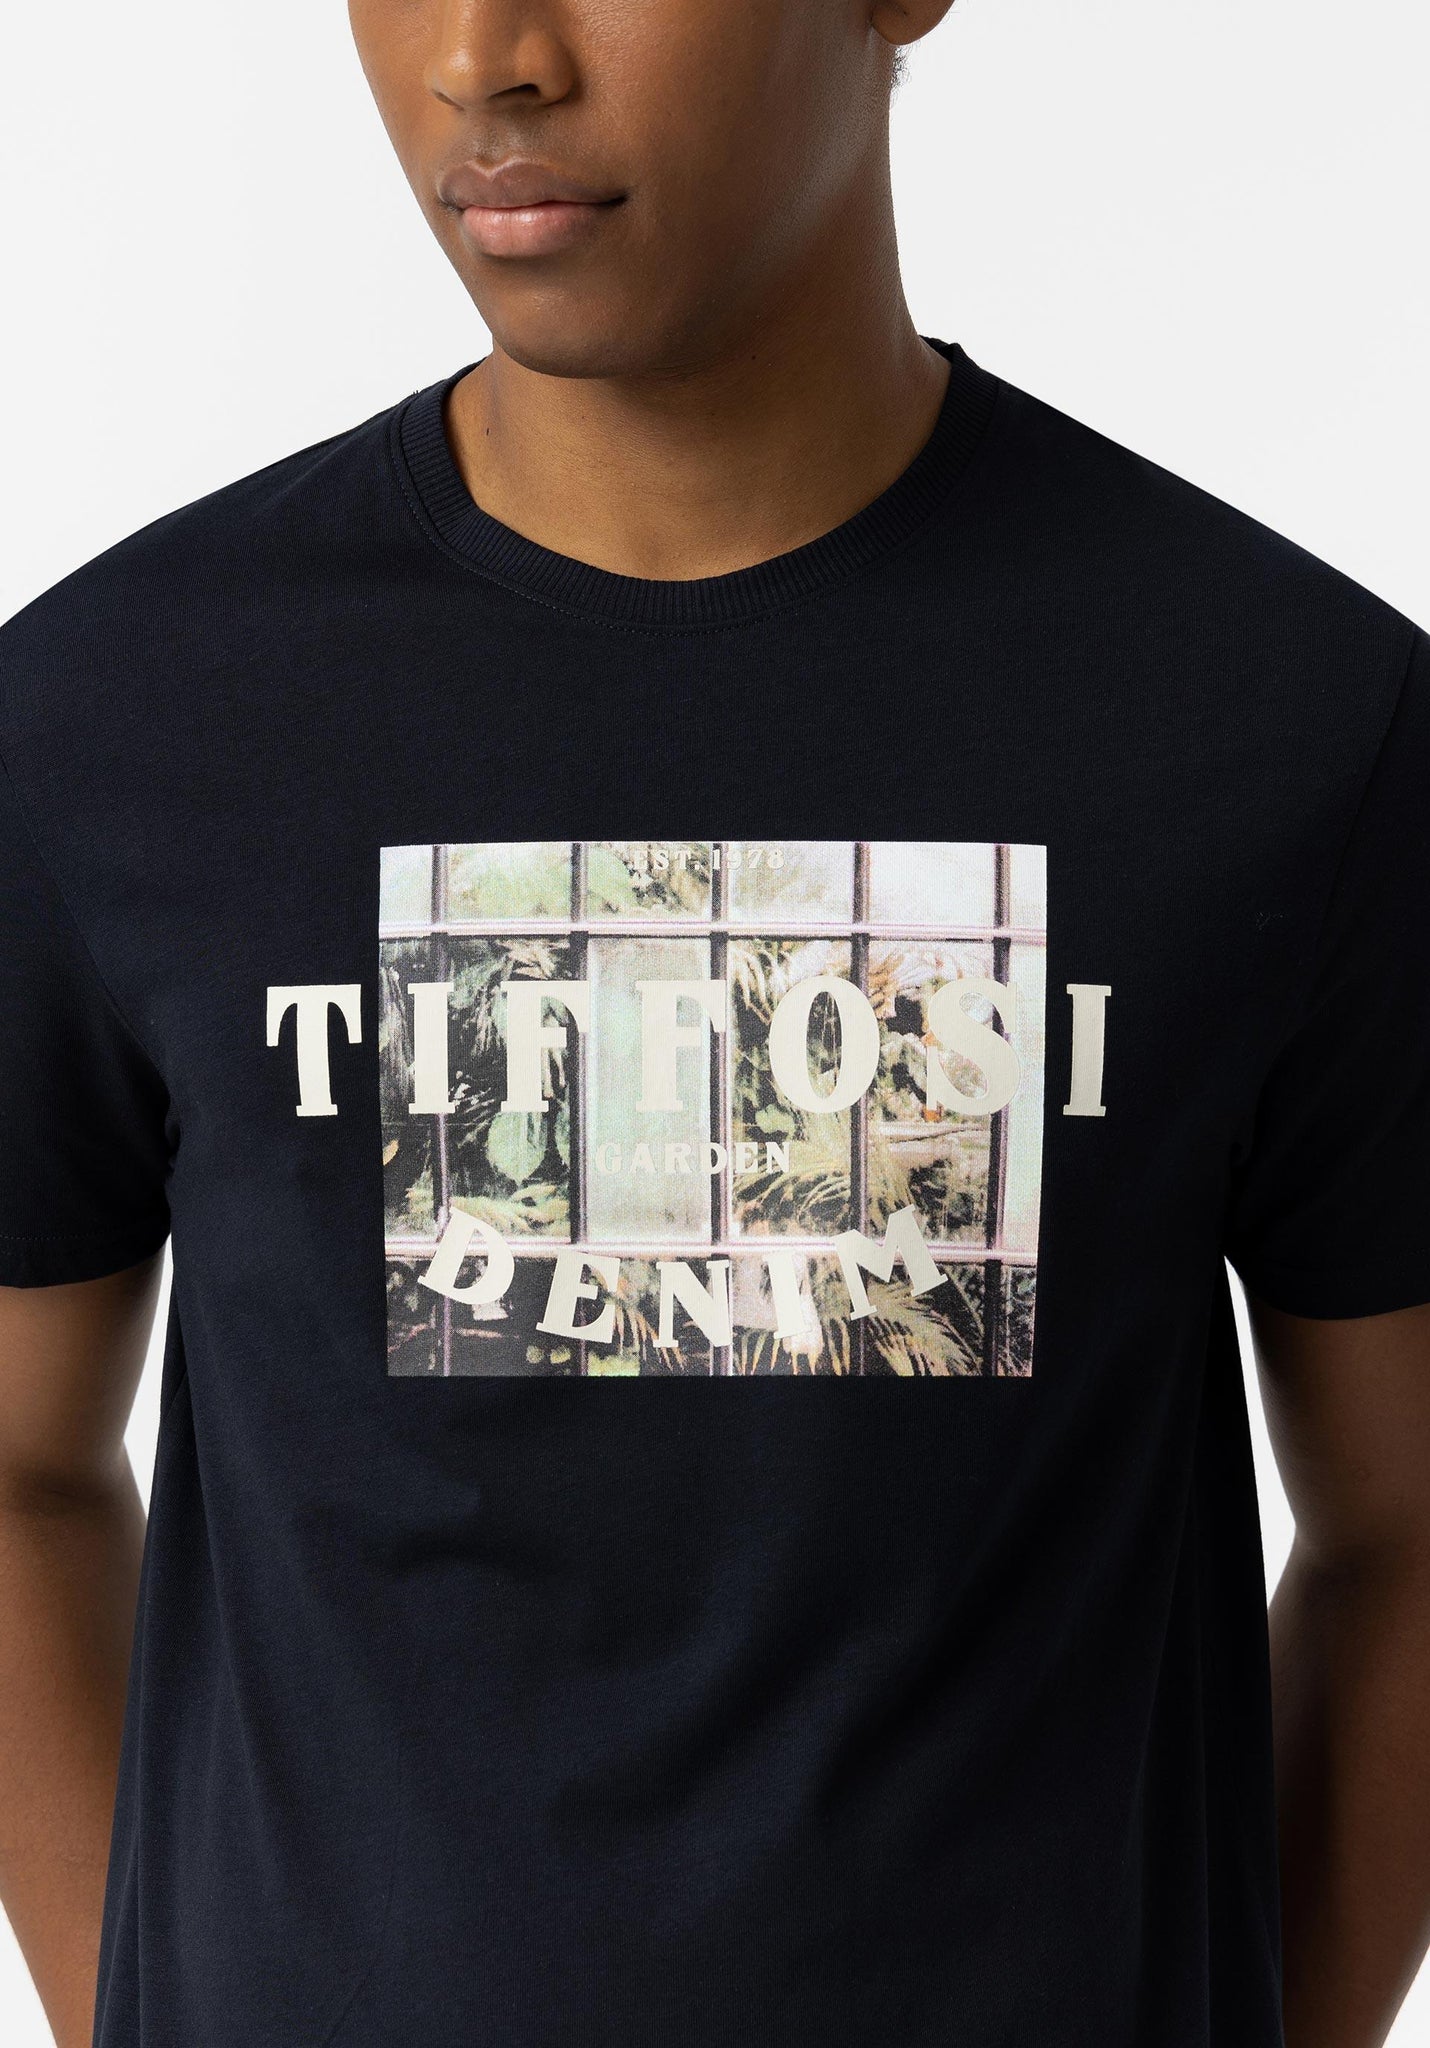 Camiseta TIFFOSI Emilio - ECRU